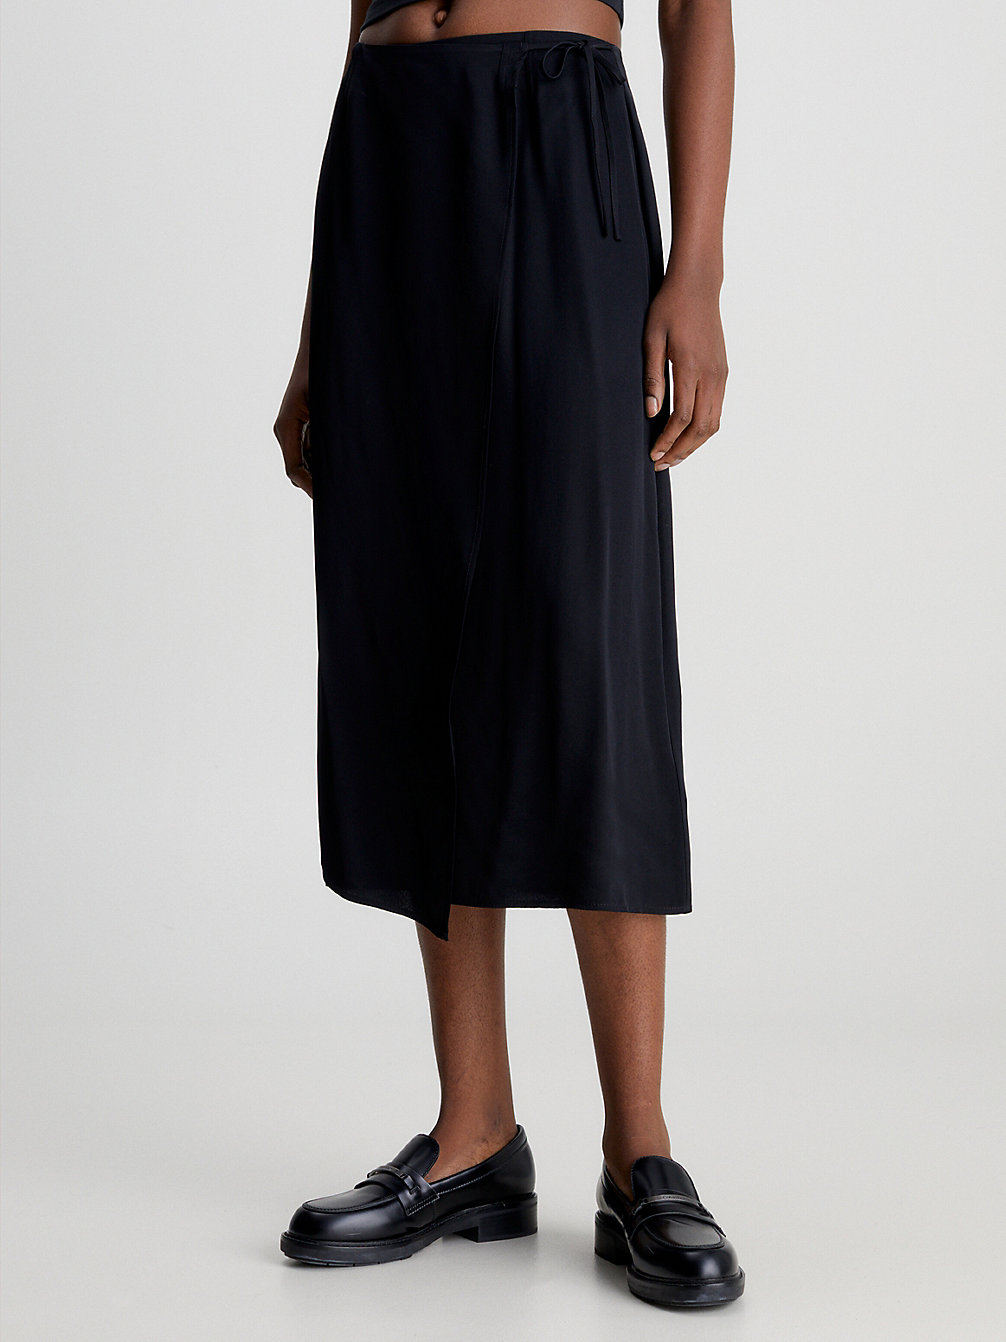 CK BLACK Shine Viscose Wrap Skirt undefined women Calvin Klein